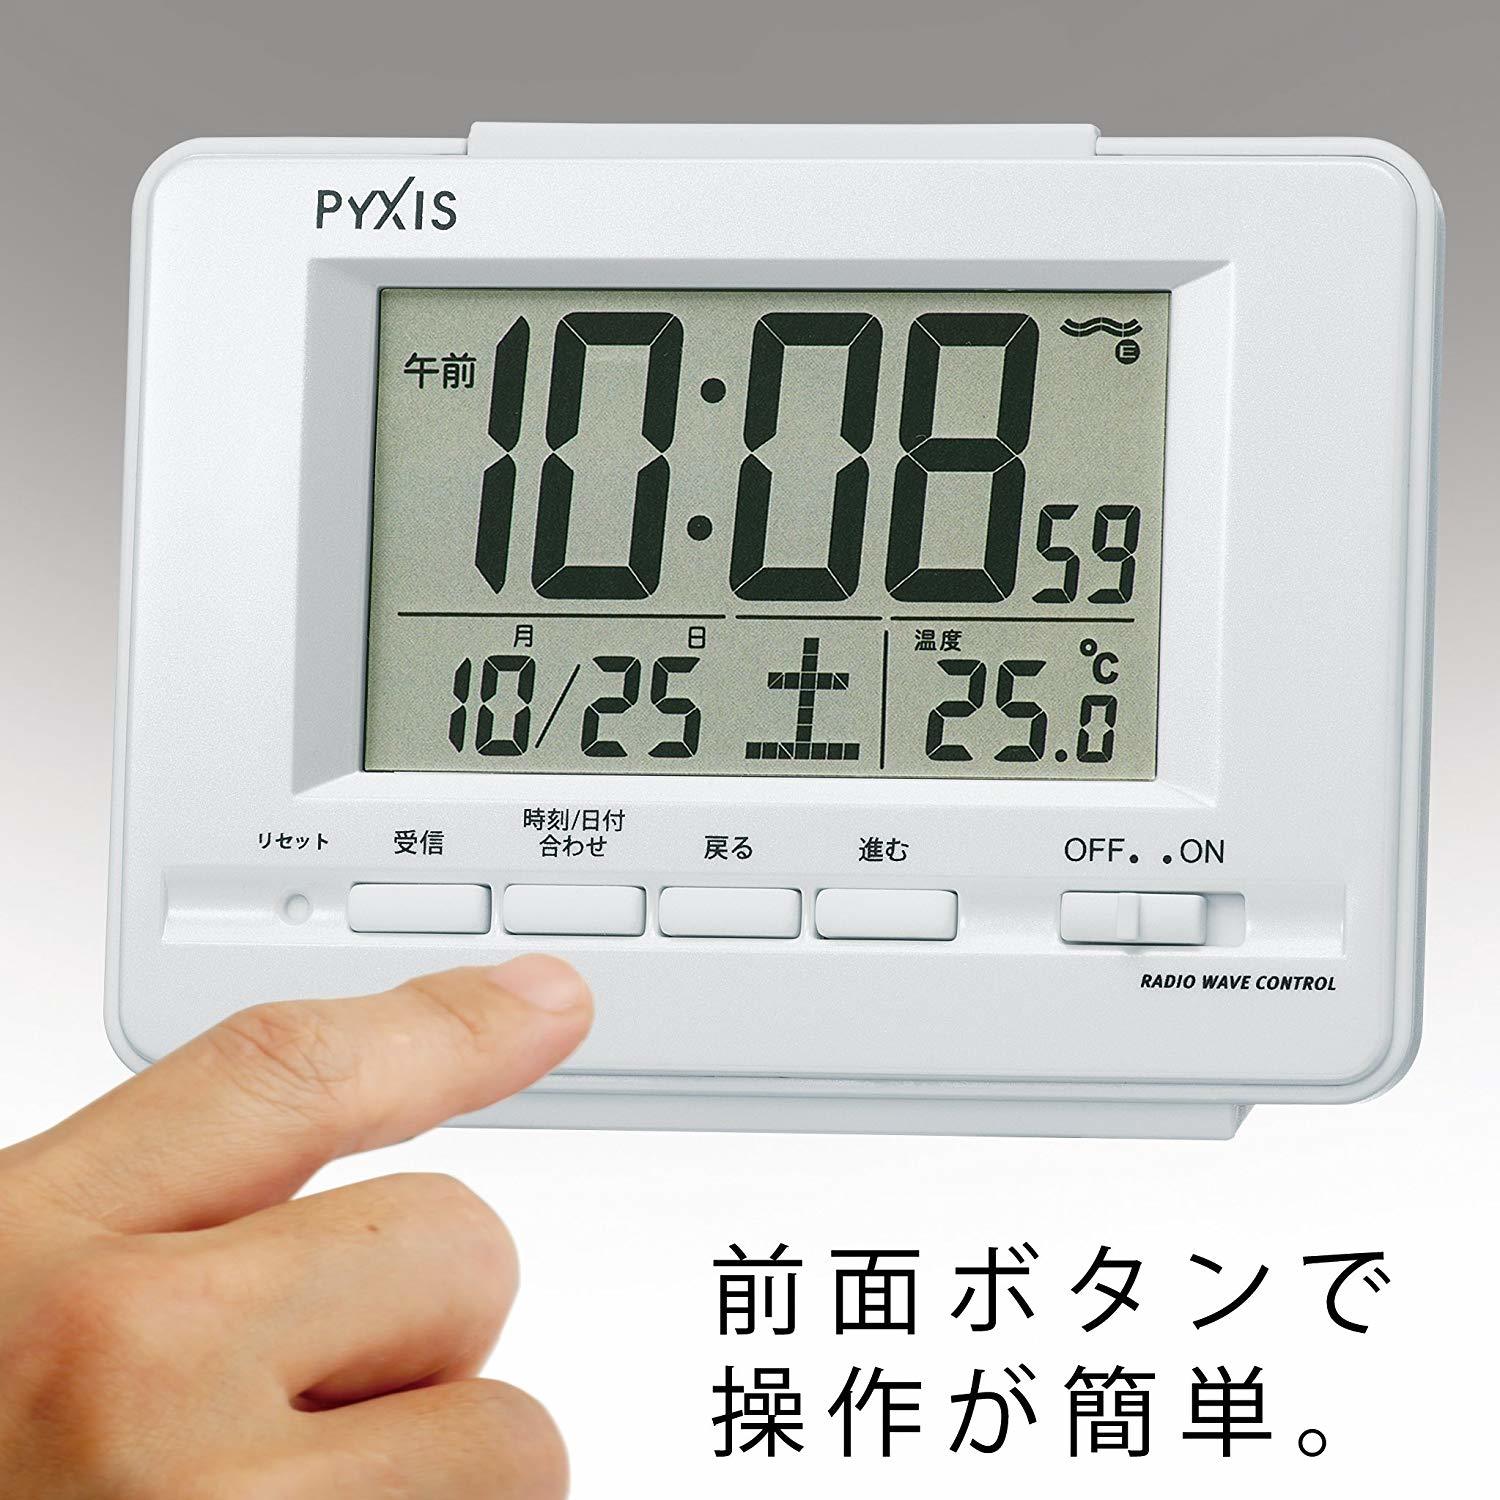 新しい到着 セイコー クロック 目覚まし時計 電波 デジタル カレンダー 温度 表示 PYXIS ピクシス 白 パール NR535H SEIKO 